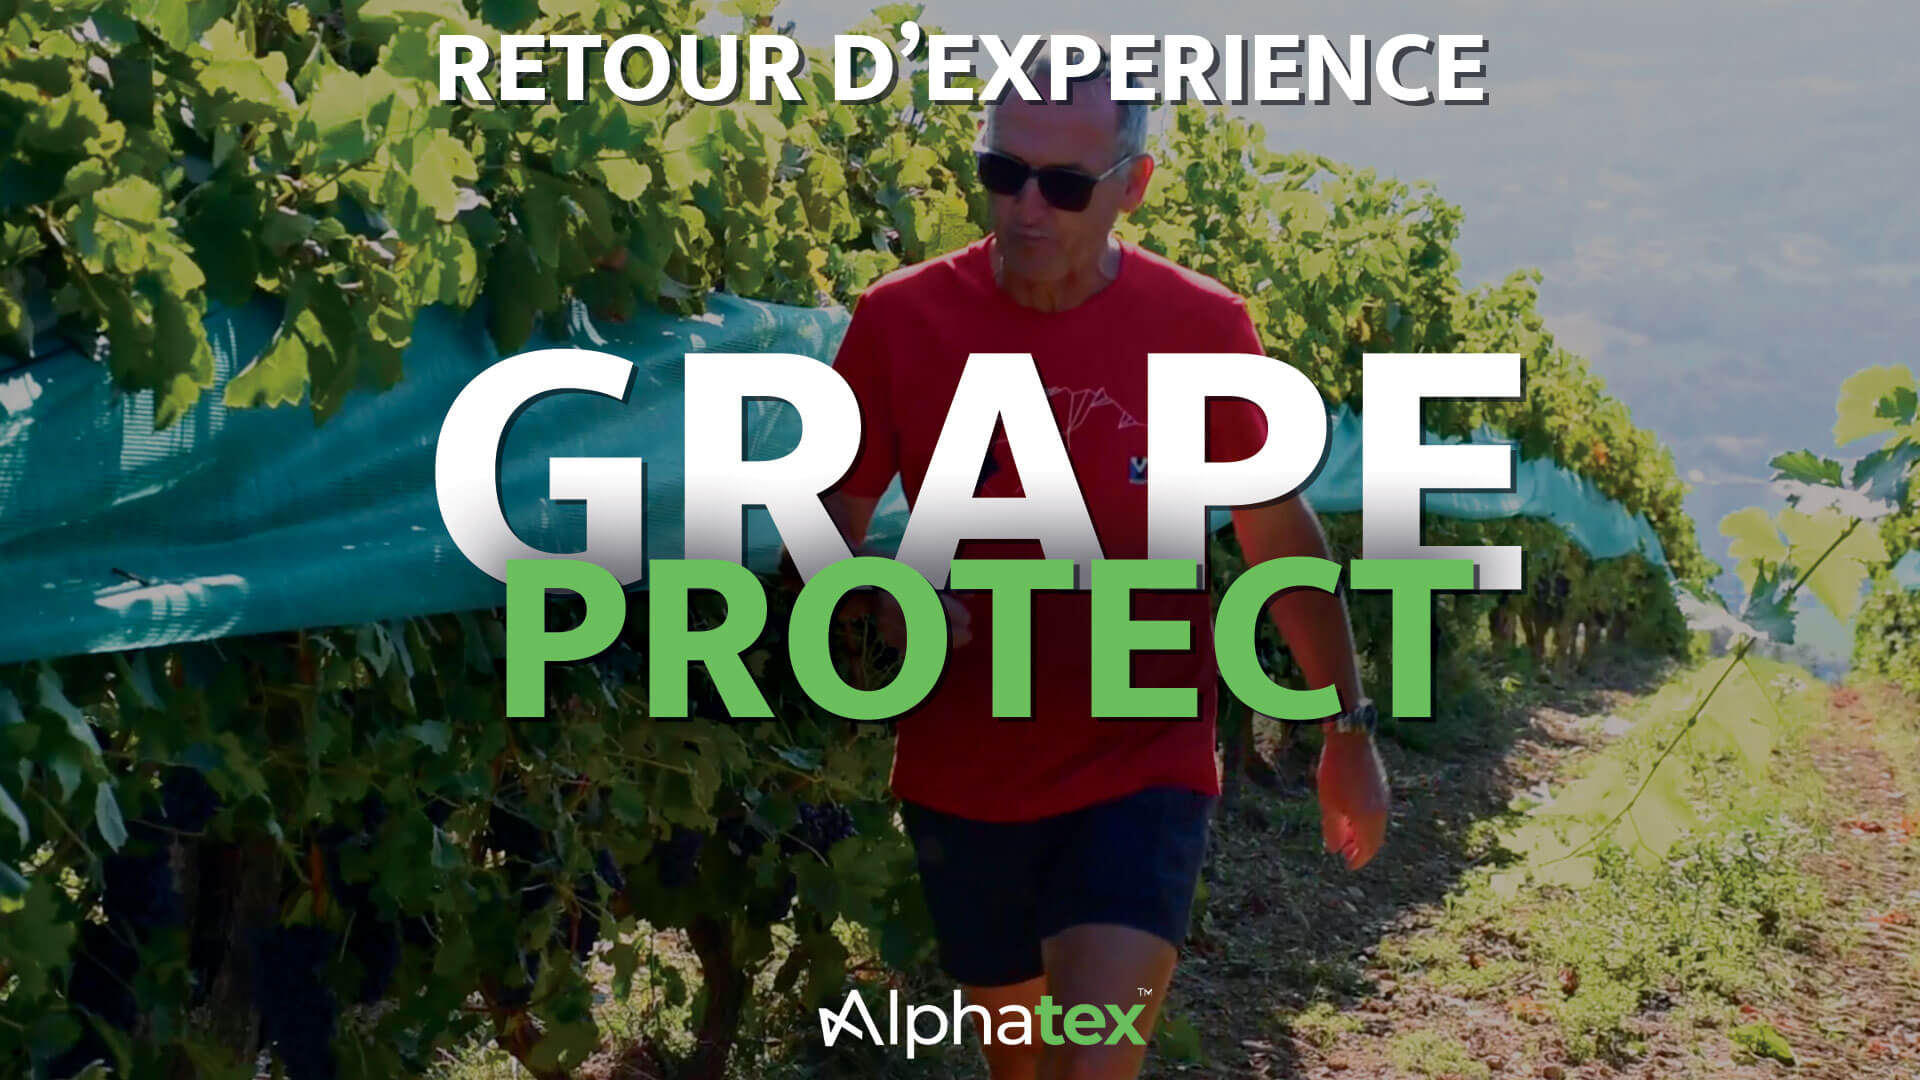 Retour d'expérience du Grape Protect - Filet de protection pour les vignes et le raisin